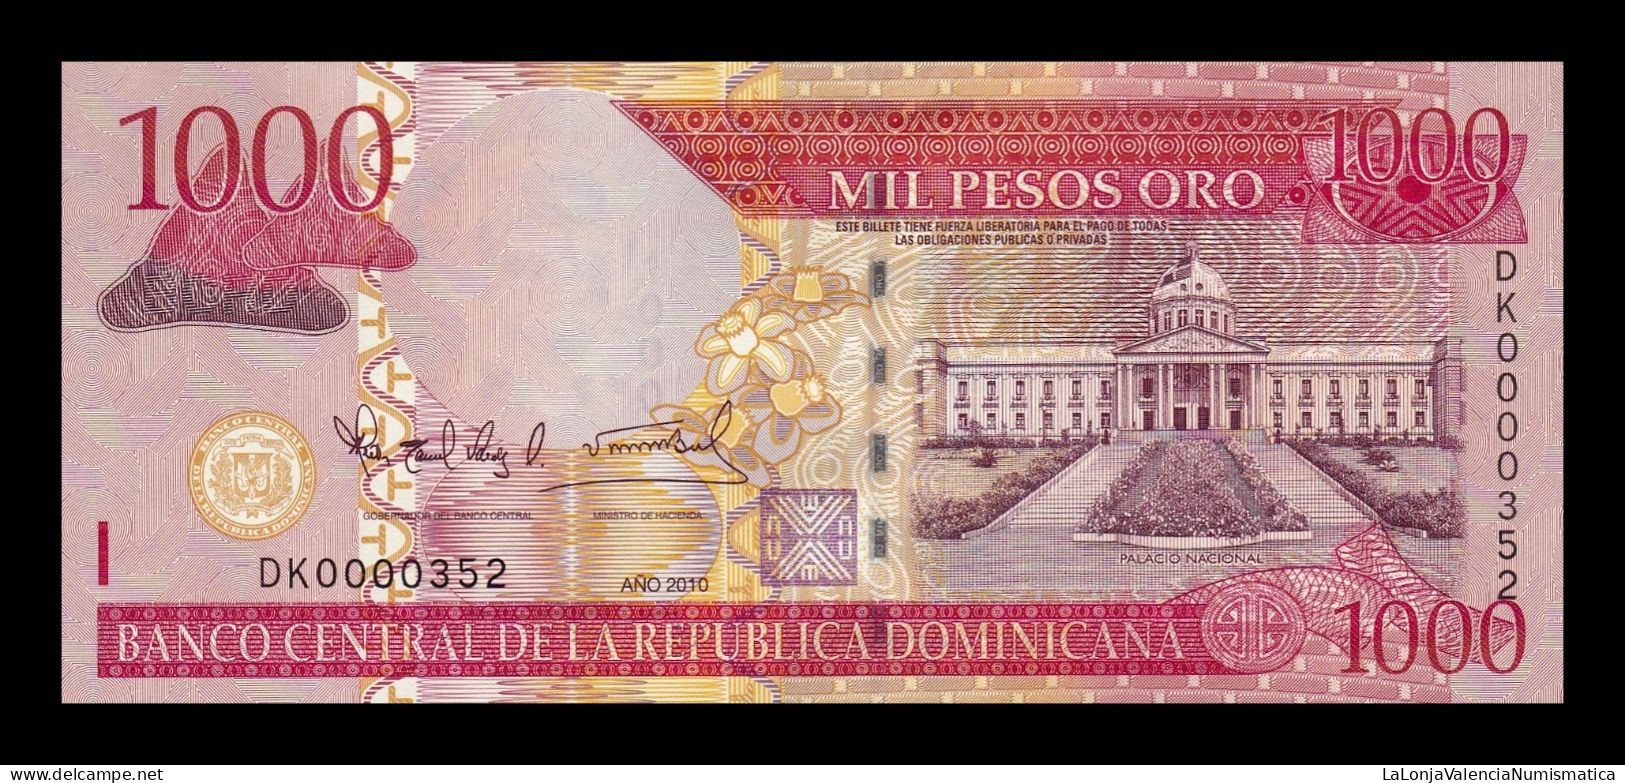 República Dominicana 1000 Pesos Oro 2010 Pick 180c Low Serial 352 Sc Unc - Dominicaine